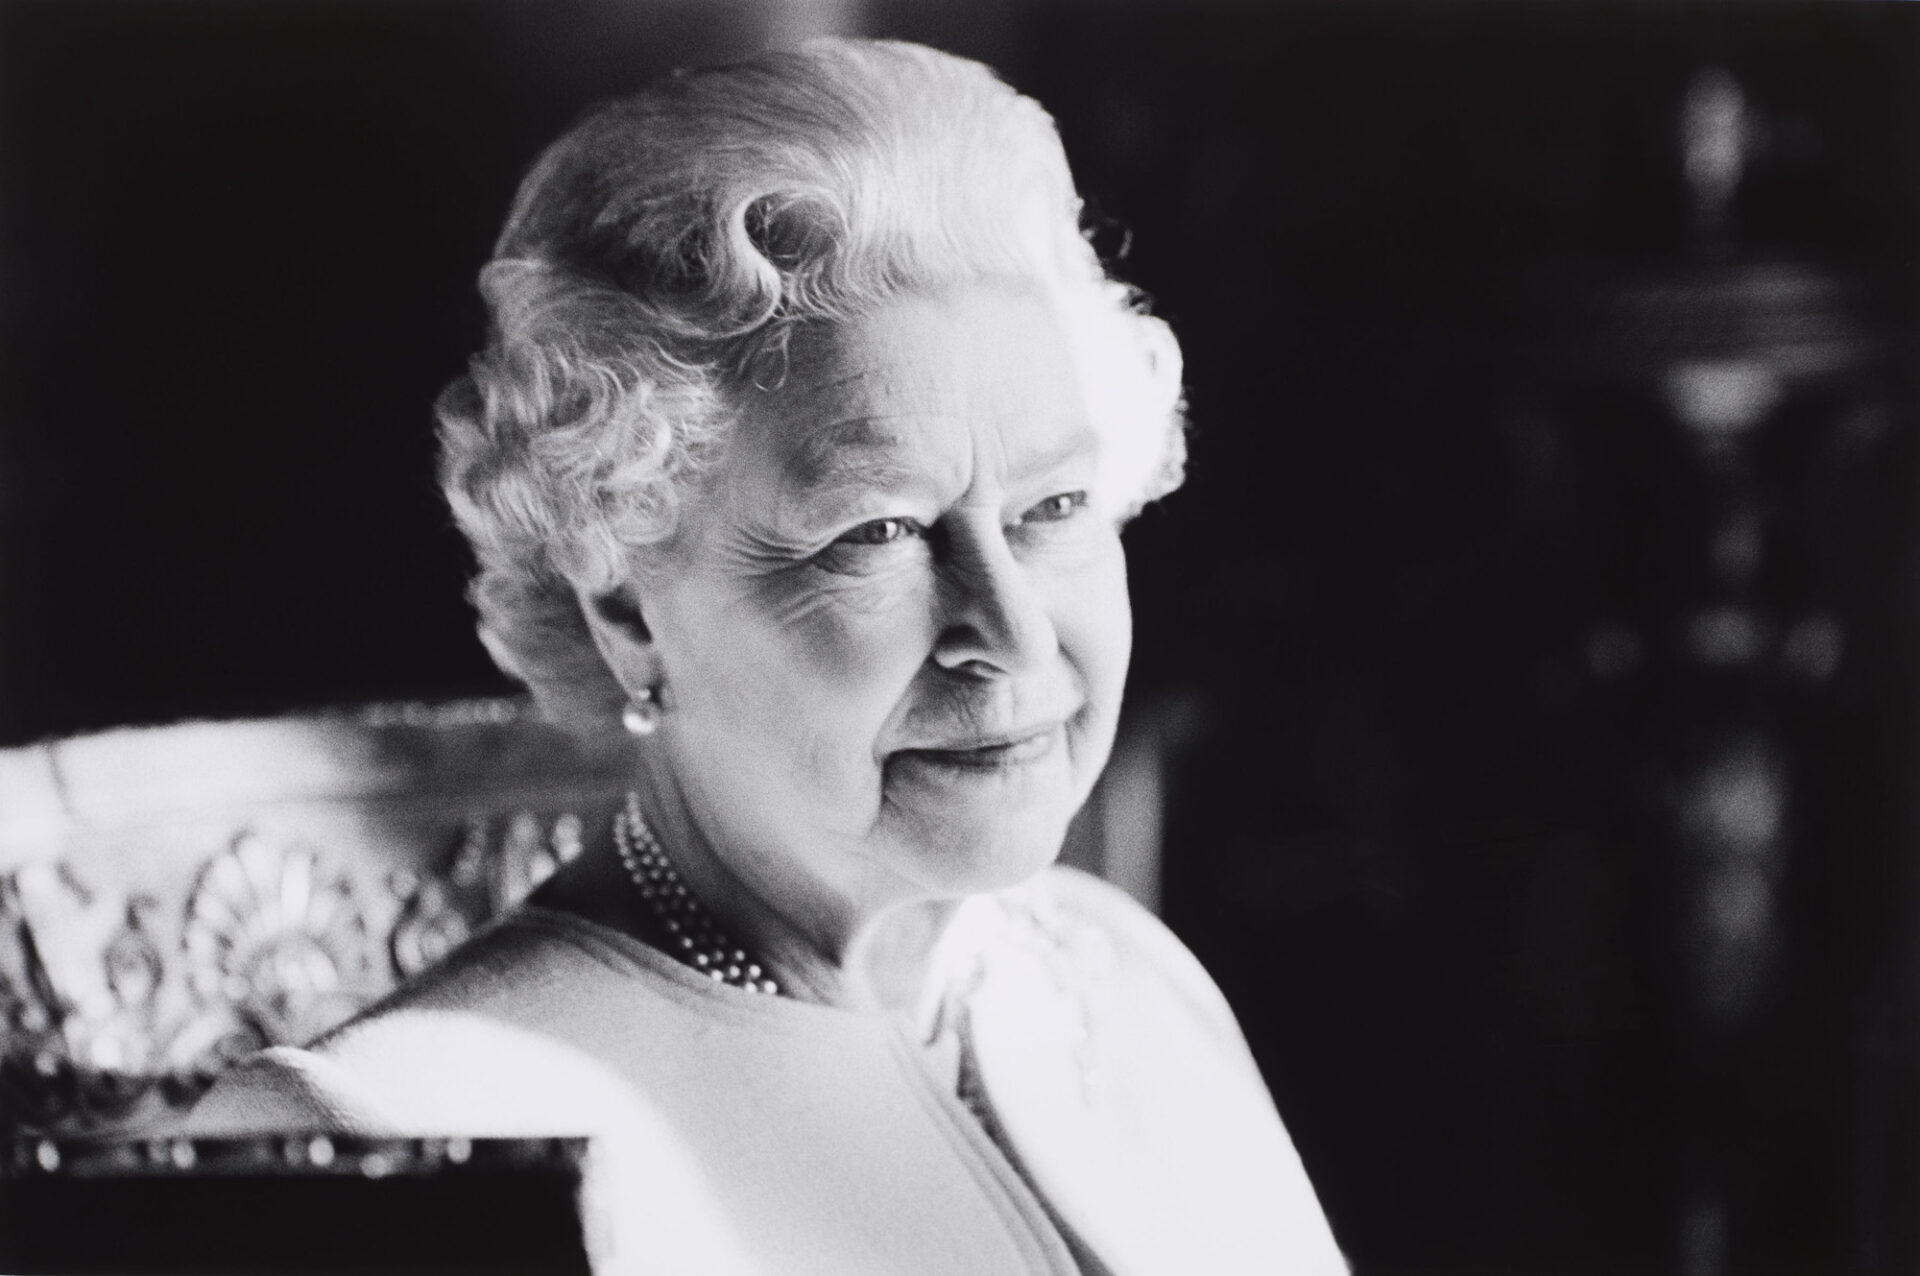 Portrait of Her Majesty the Queen Elizabeth II